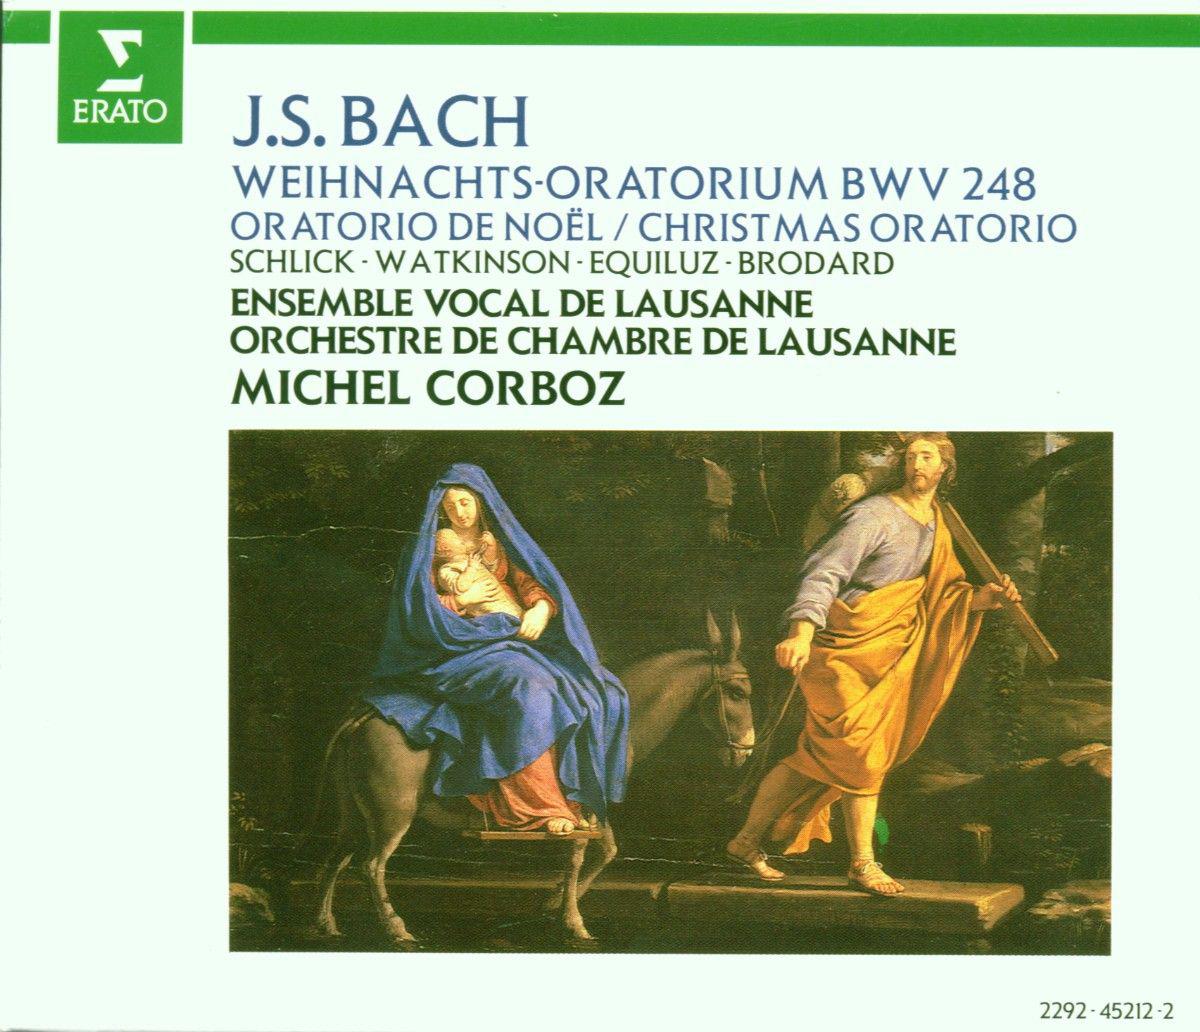 Weihnachtsoratorium, BWV 248, Pt. 4: No. 38, Rezitativ und AriosoChoral. " Immanuel, o sü es Wort"